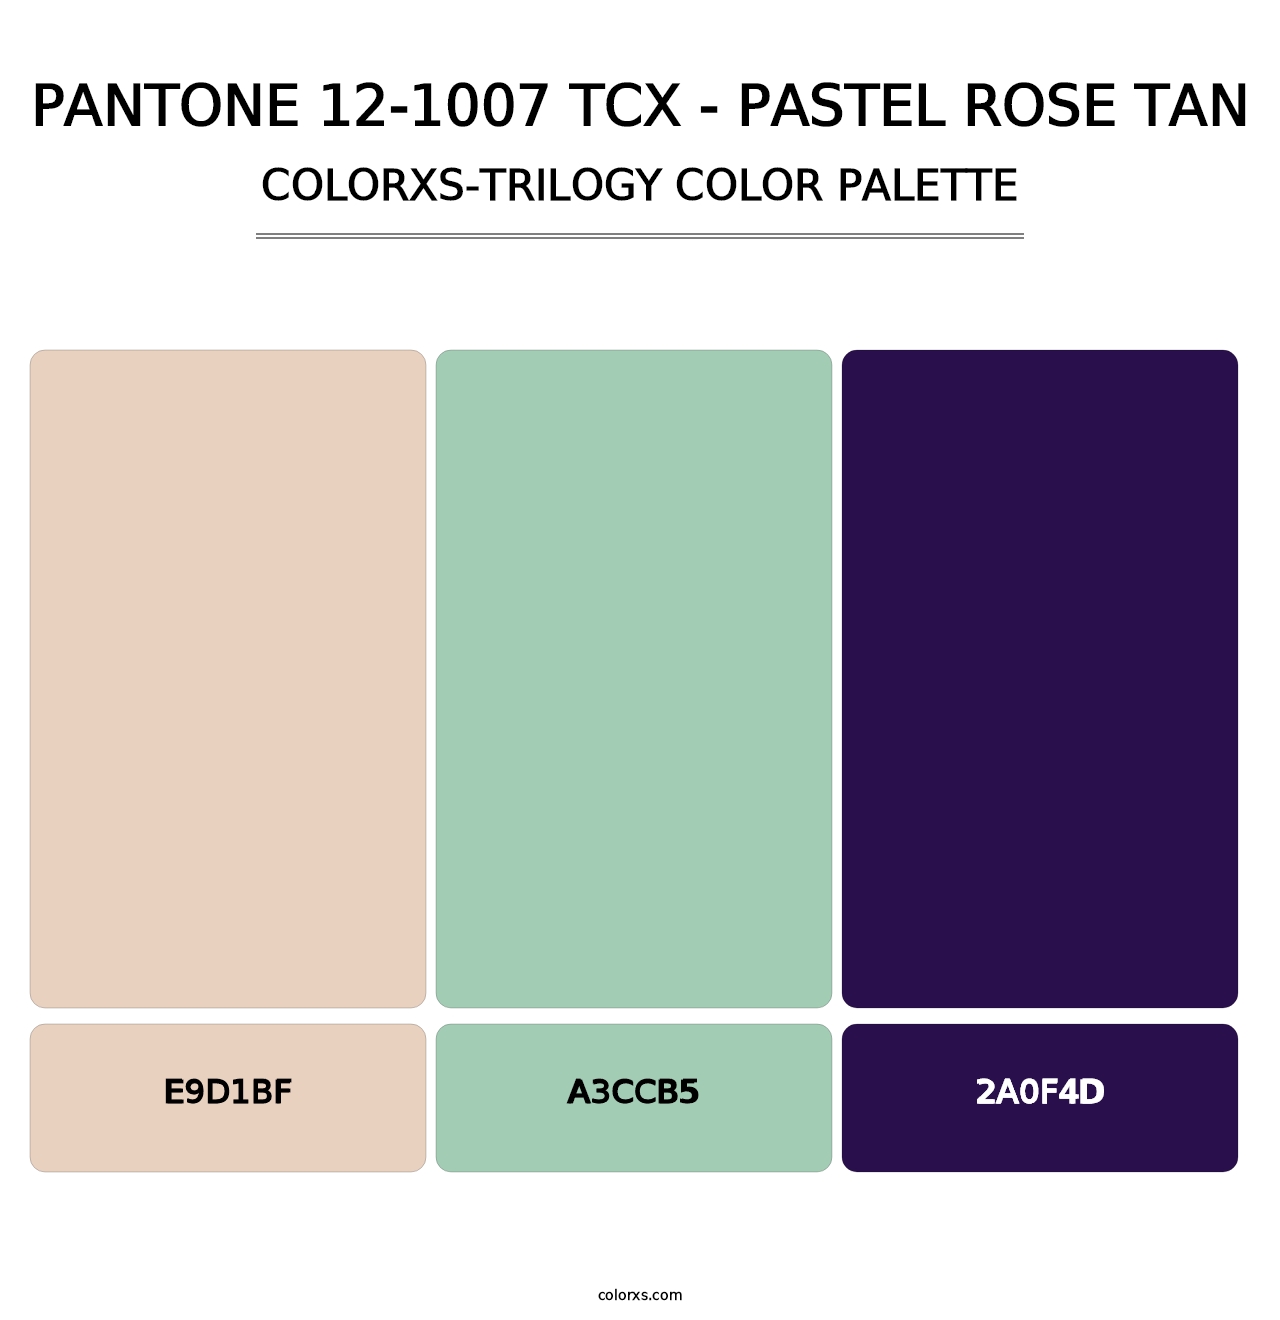 PANTONE 12-1007 TCX - Pastel Rose Tan - Colorxs Trilogy Palette